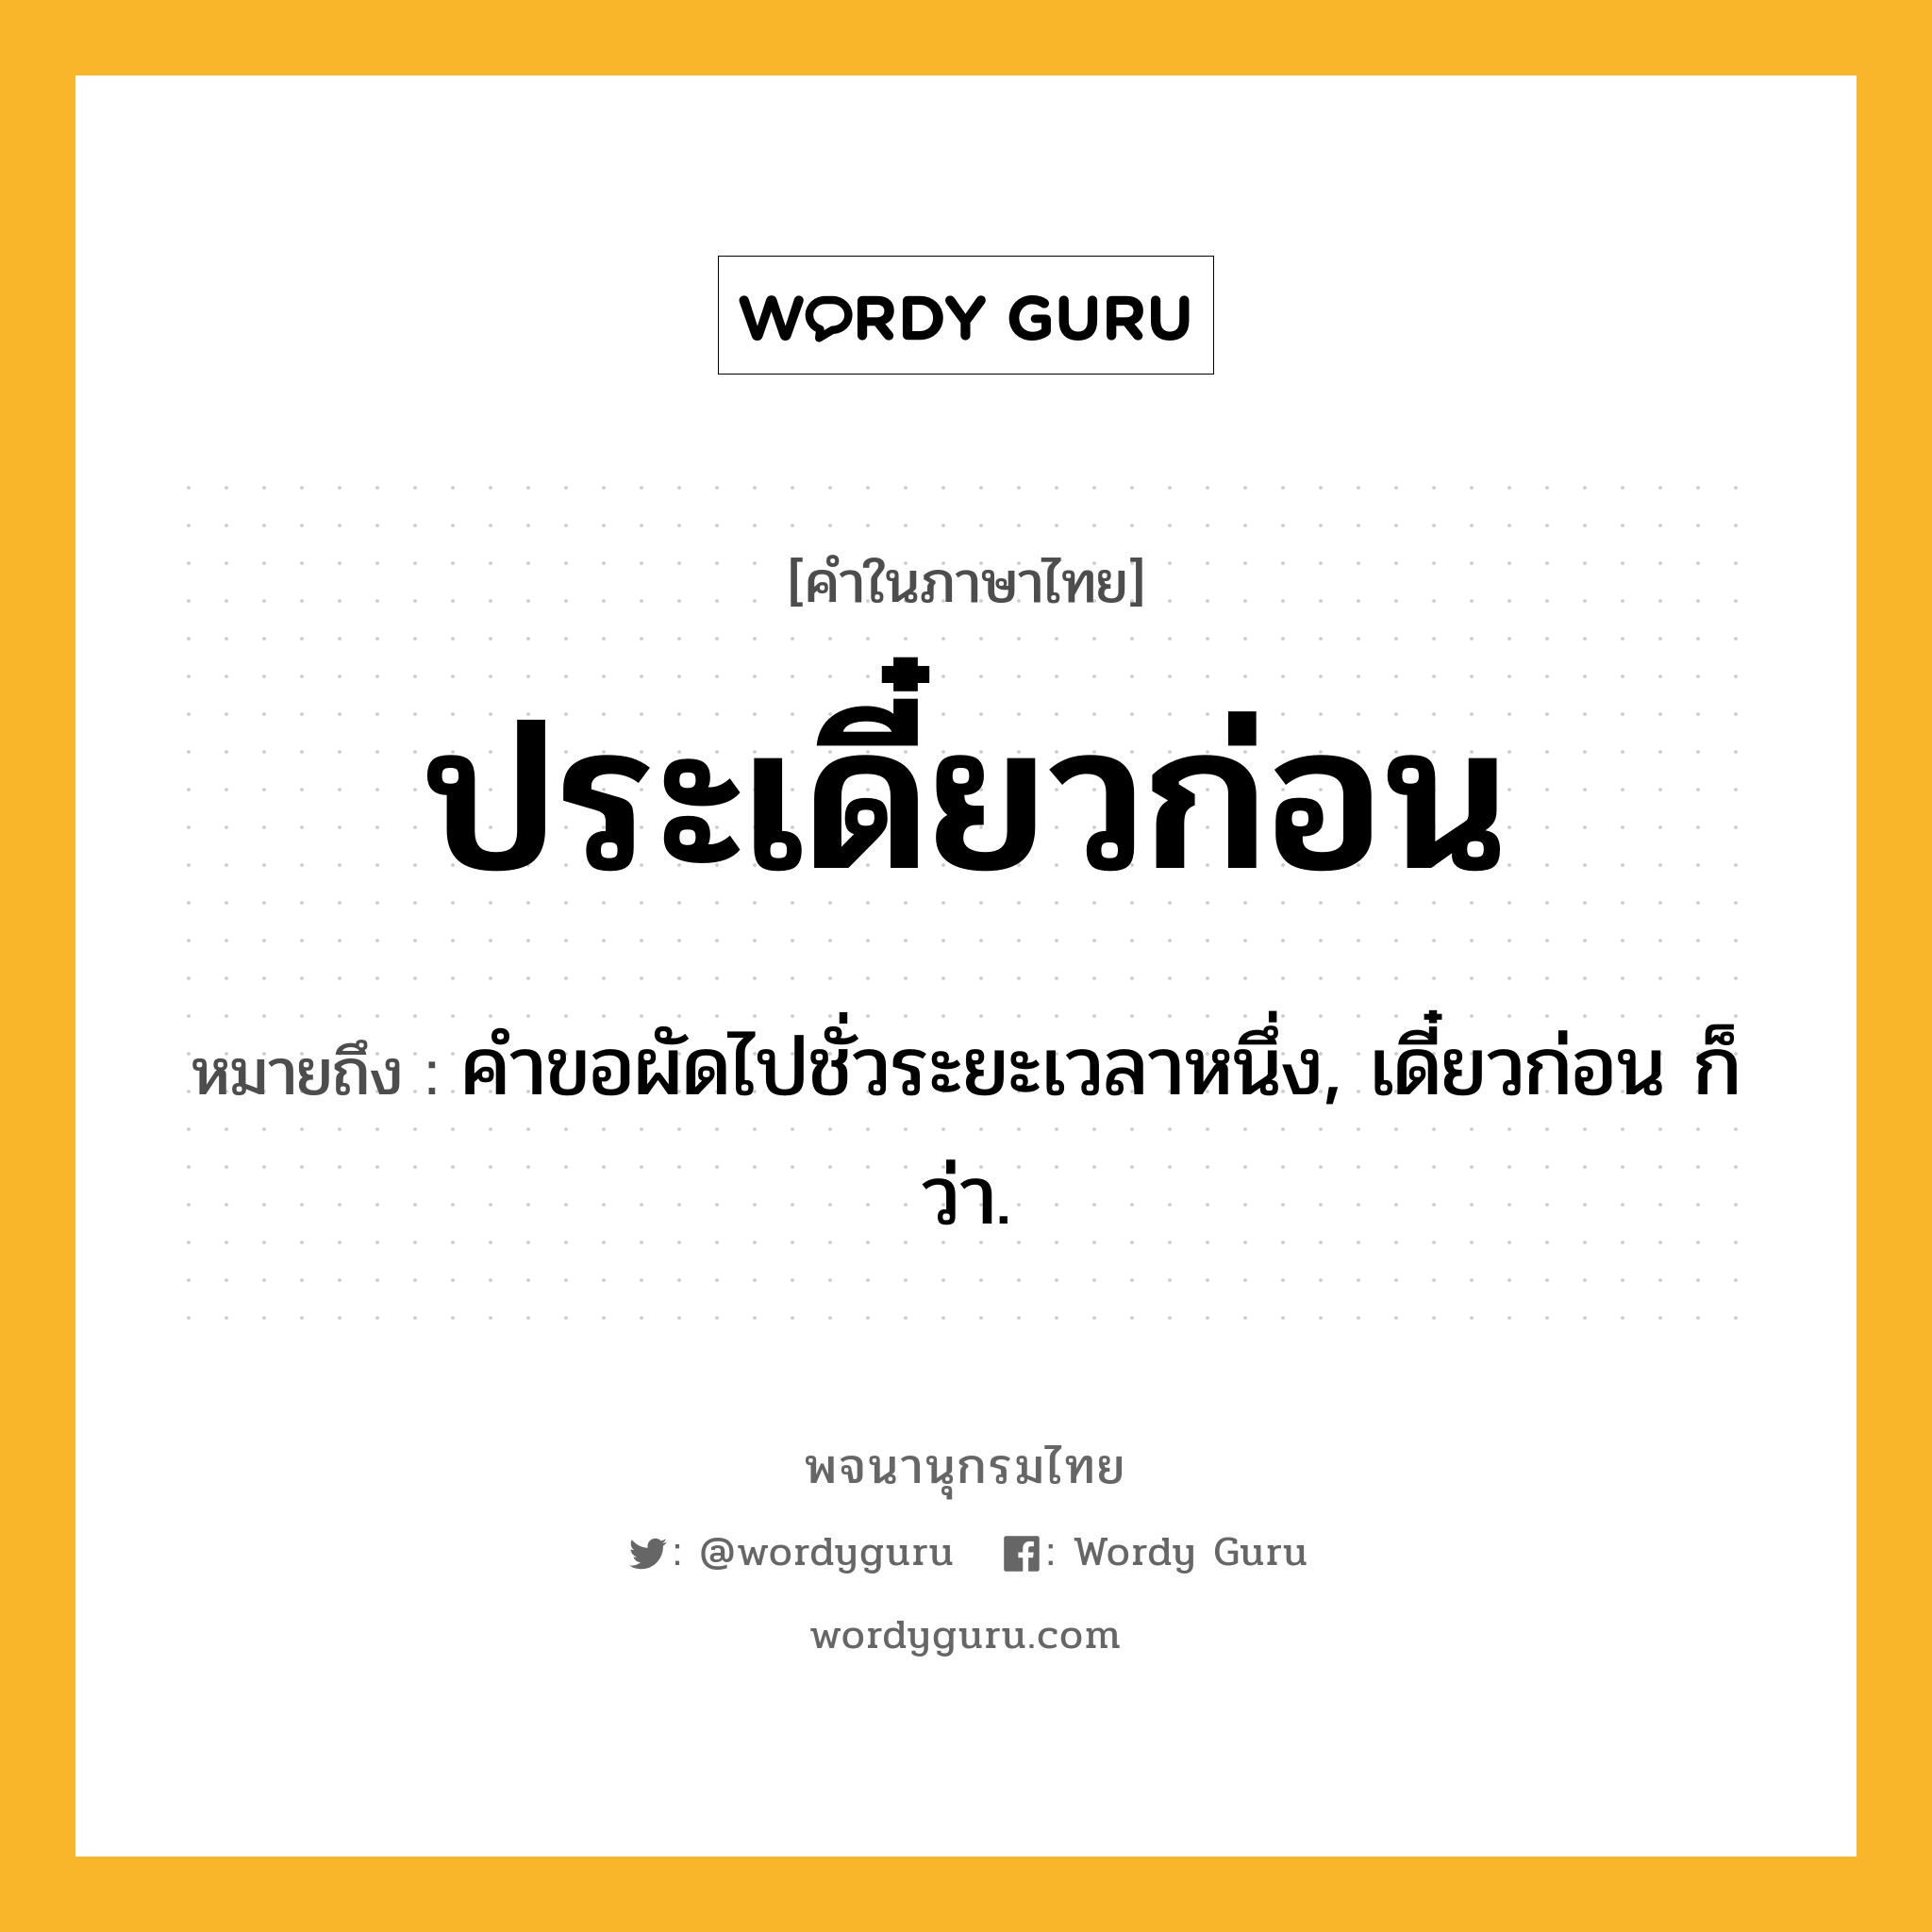 ประเดี๋ยวก่อน ความหมาย หมายถึงอะไร?, คำในภาษาไทย ประเดี๋ยวก่อน หมายถึง คําขอผัดไปชั่วระยะเวลาหนึ่ง, เดี๋ยวก่อน ก็ว่า.